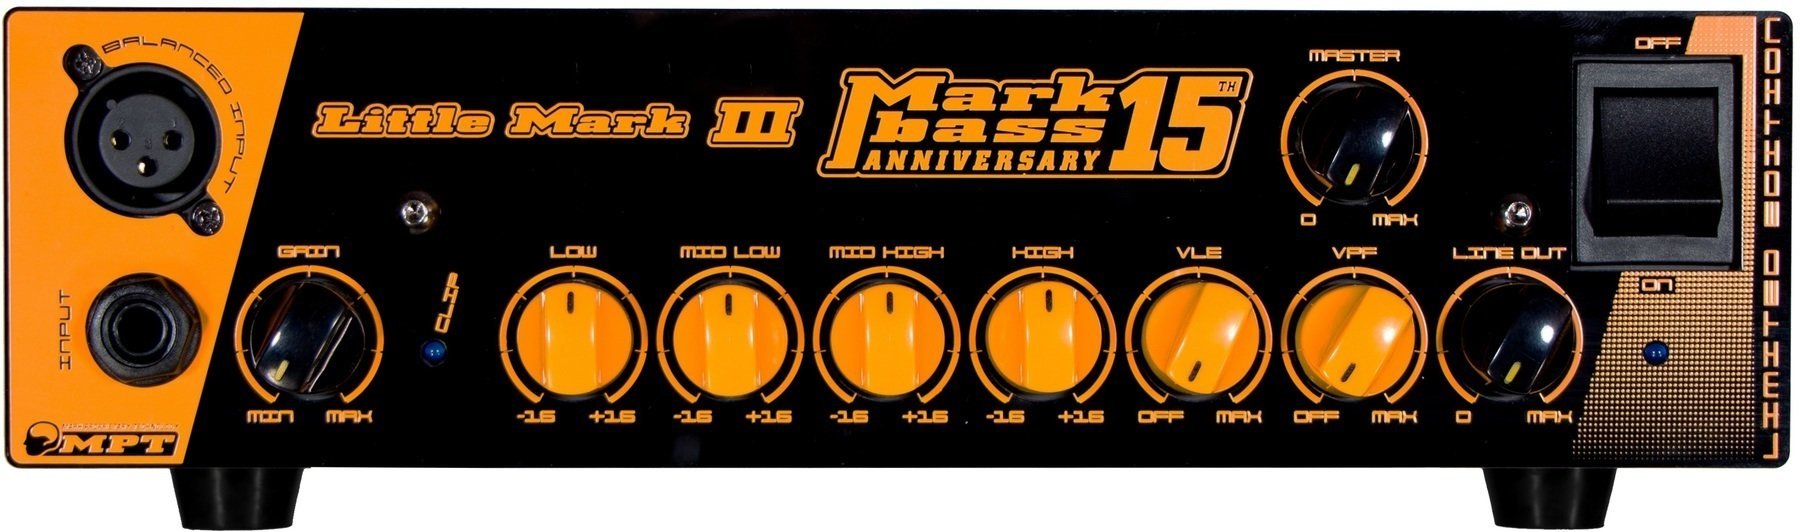 Solid-State Bass Amplifier Markbass Little Mark III Anniversary 15